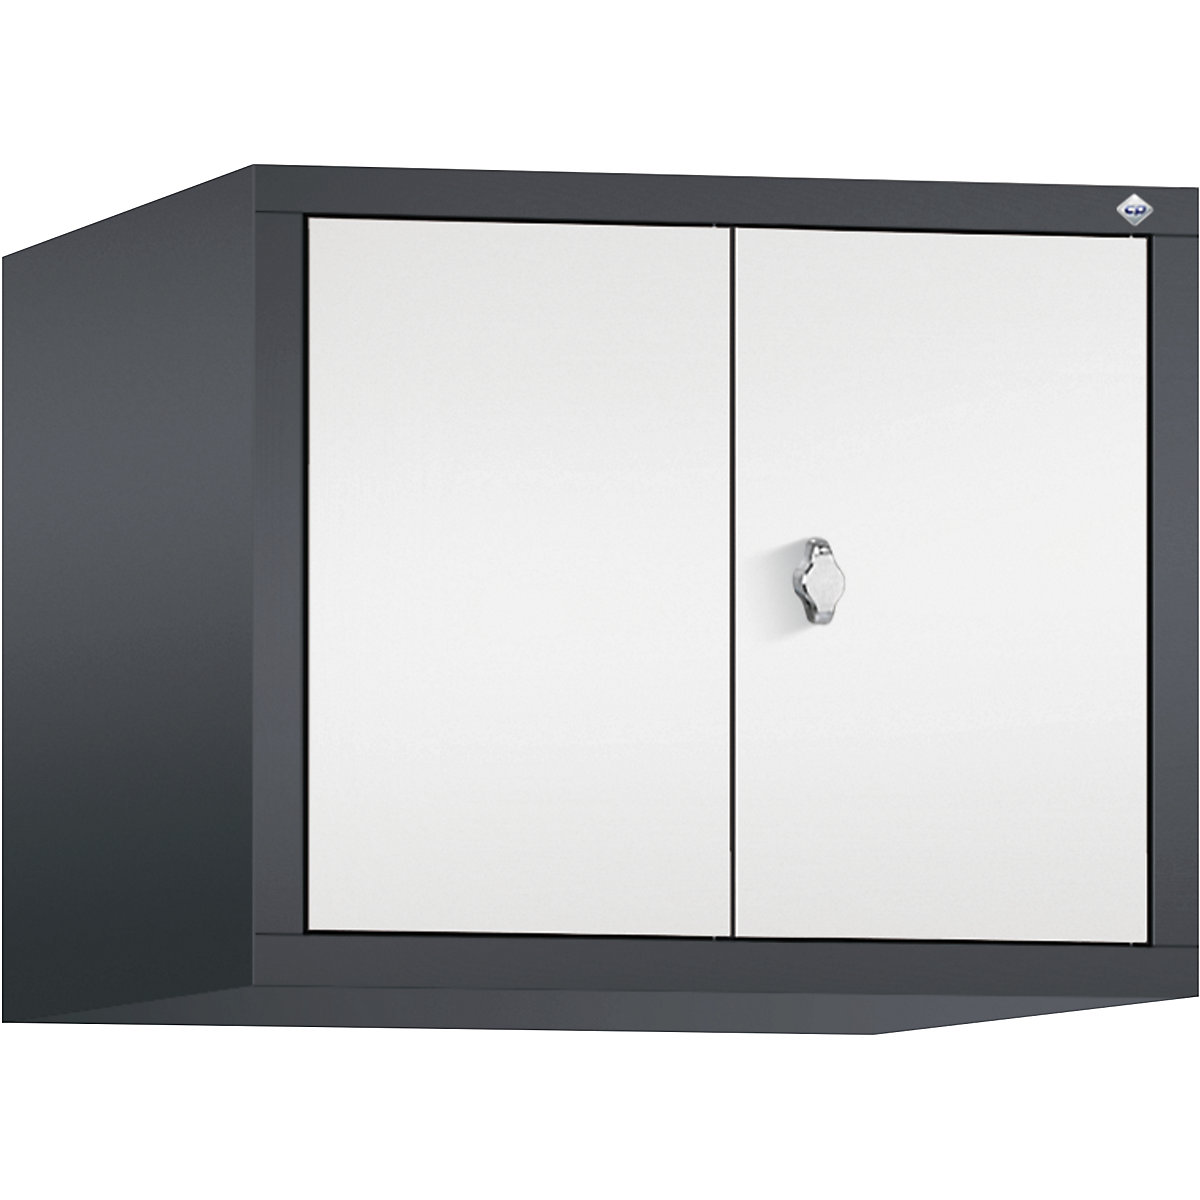 C+P – Altillo CLASSIC, puertas batientes que cierran al ras entre sí, 2 compartimentos, anchura de compartimento 300 mm, gris negruzco / blanco tráfico